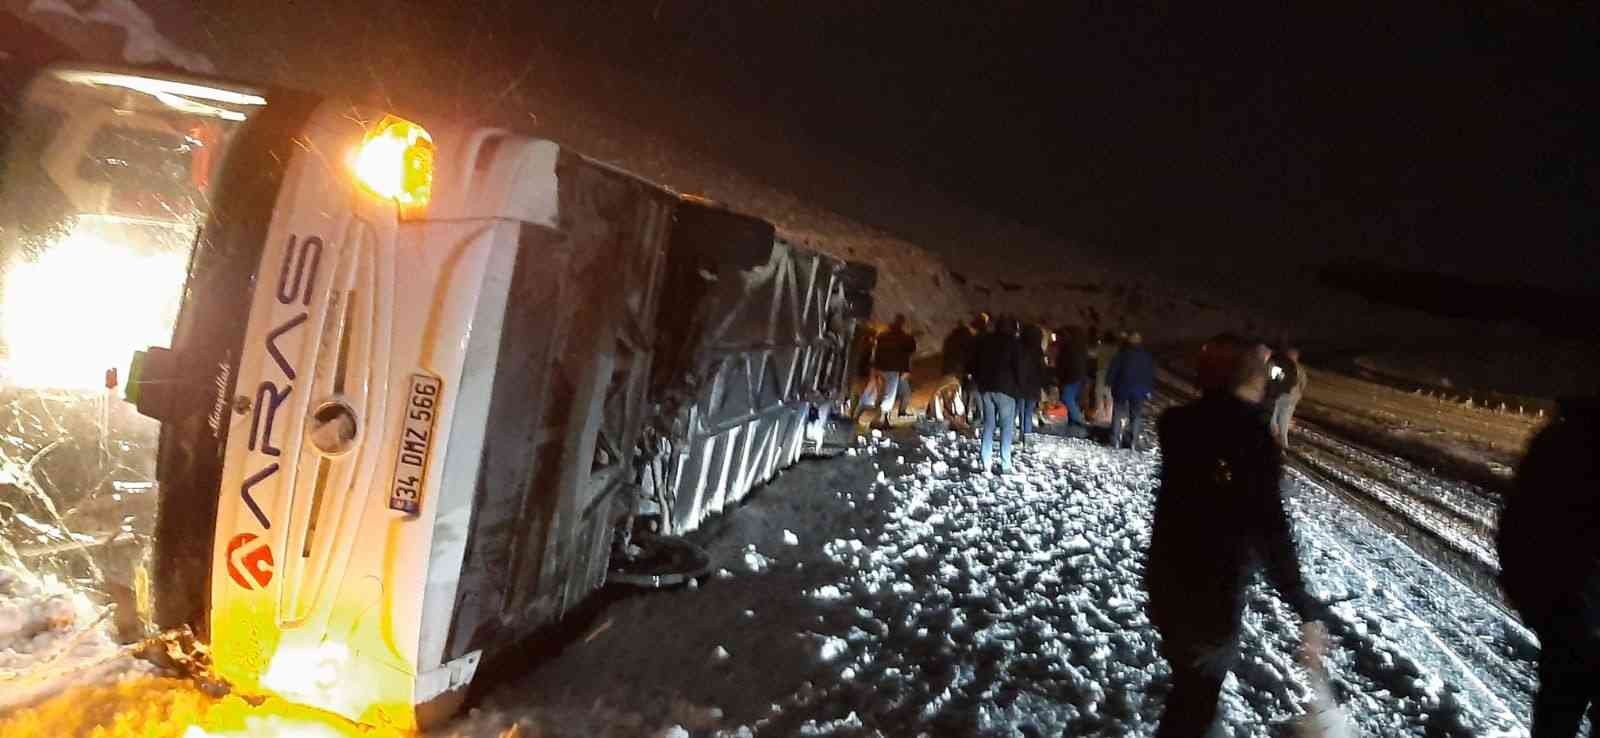 Kars’ta yolcu otobüsü devrildi: 4 ölü, çok sayıda yaralı #kars